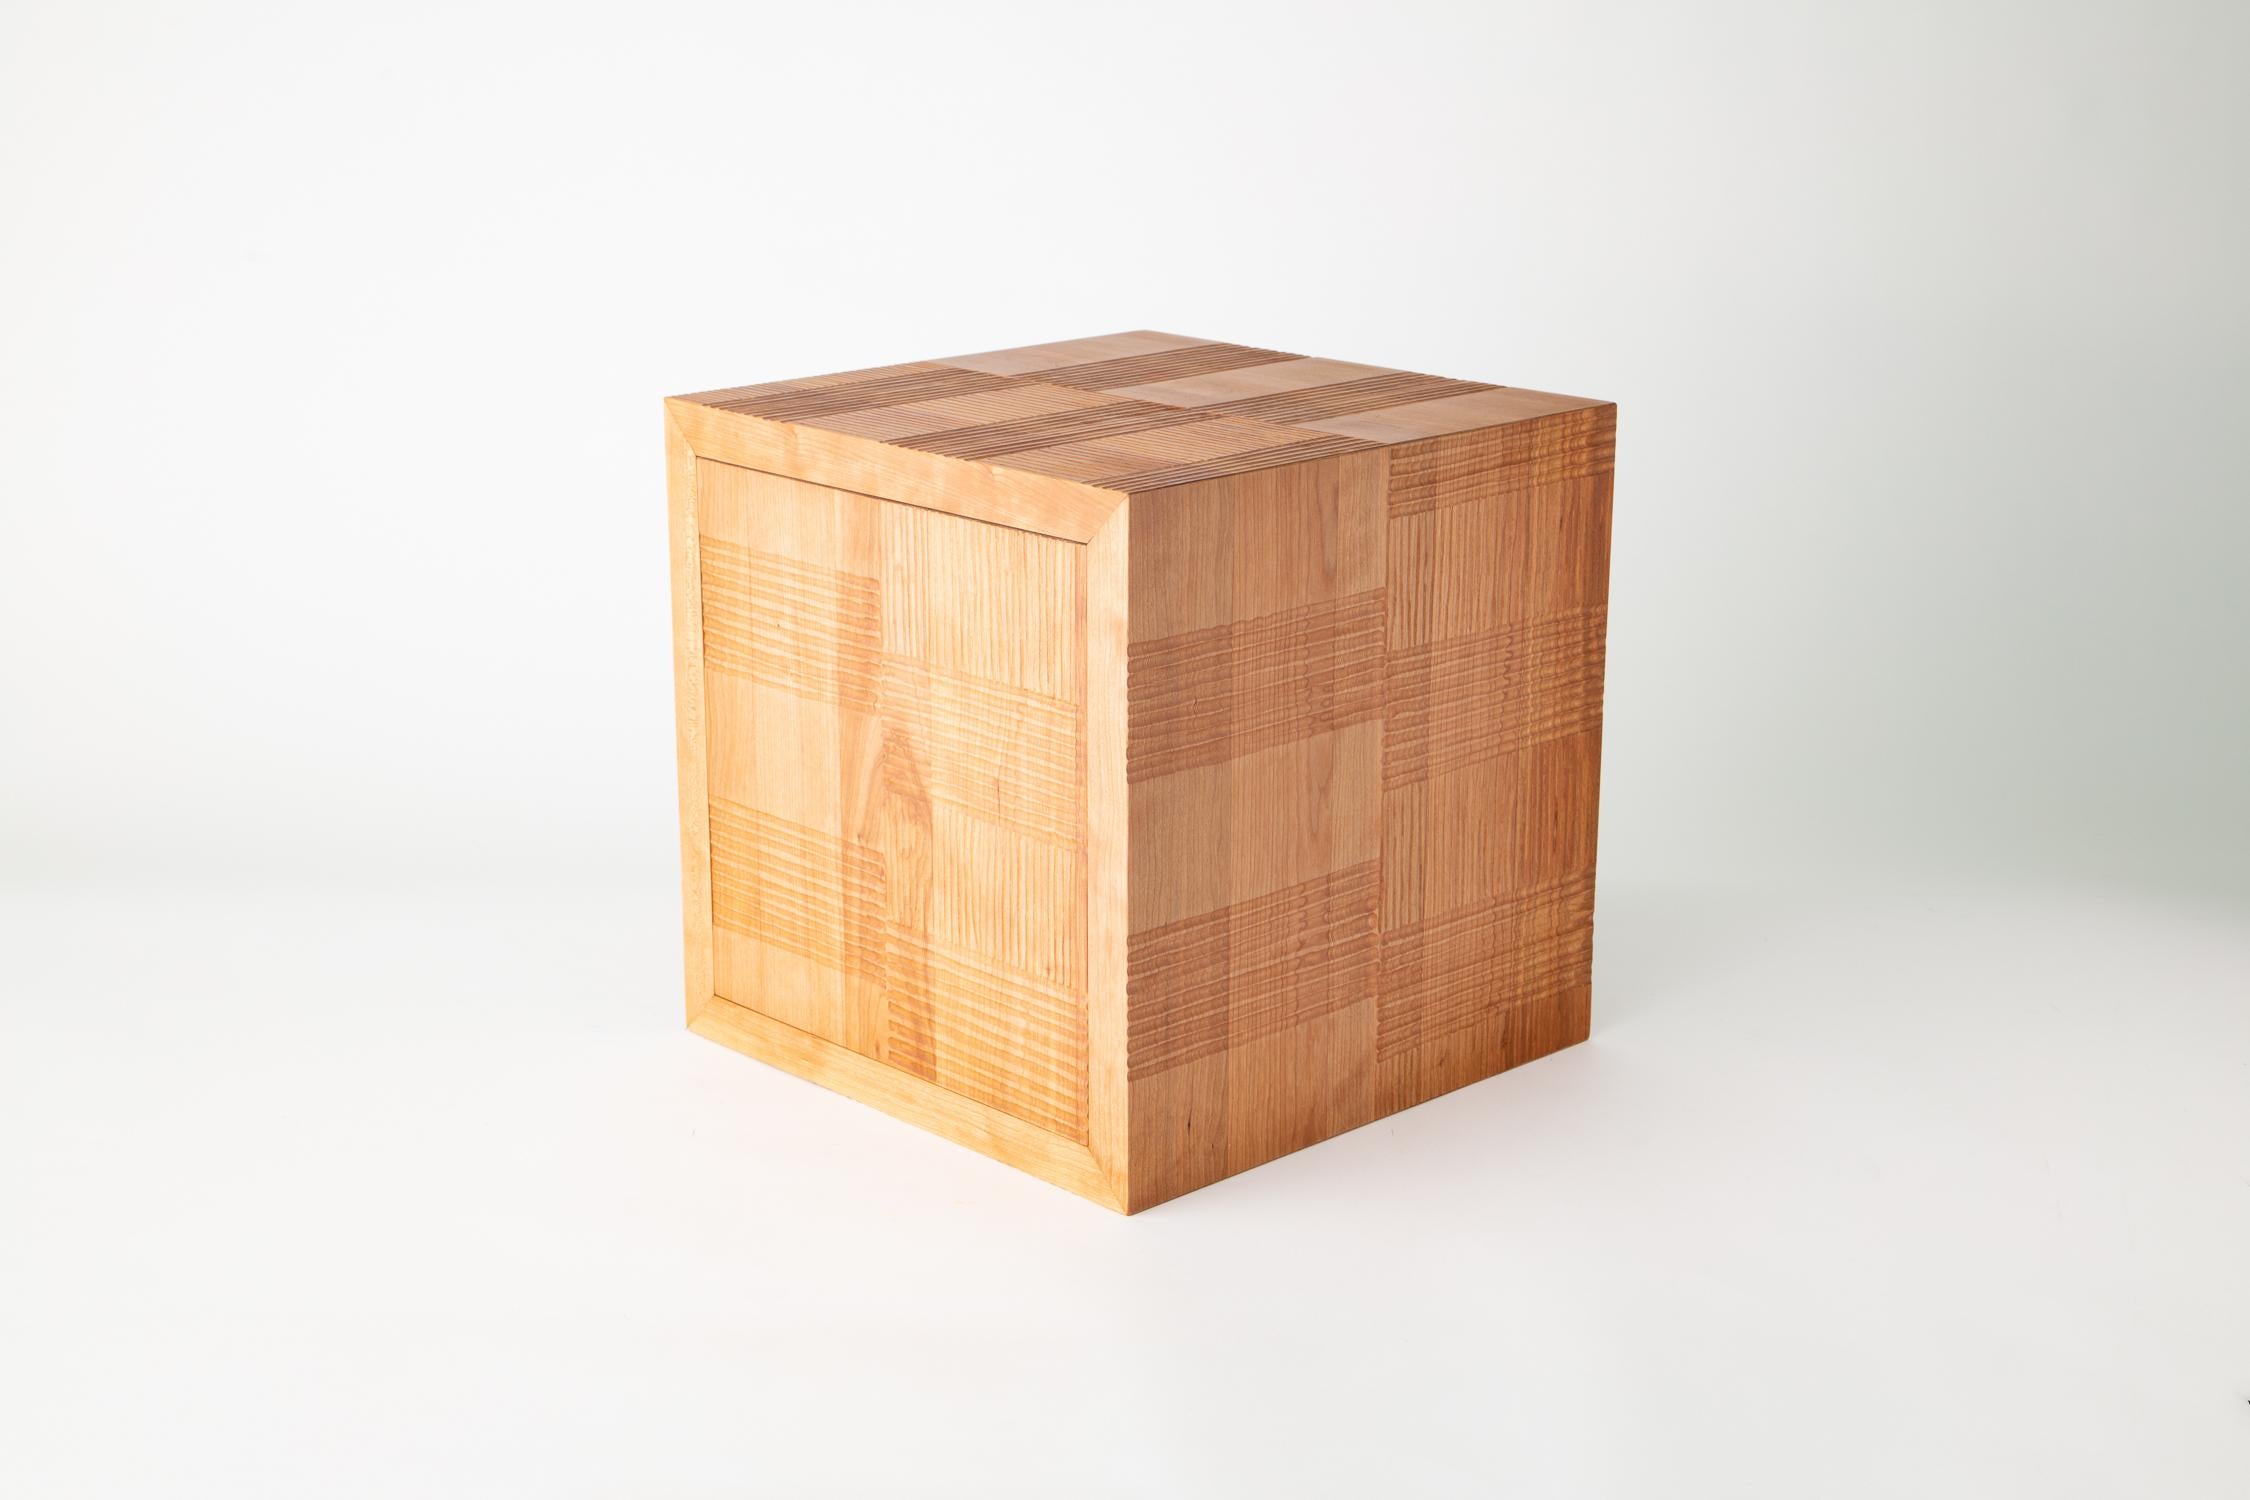 Lignes sculptées cube en bois, lignes rayées cerise

Les cubes en bois de Noah James Spencer sont des sculptures minimalistes. Fabriqués en bois uni ou à motifs sculptés, ils peuvent facilement se tenir seuls dans une pièce, mais s'ils sont